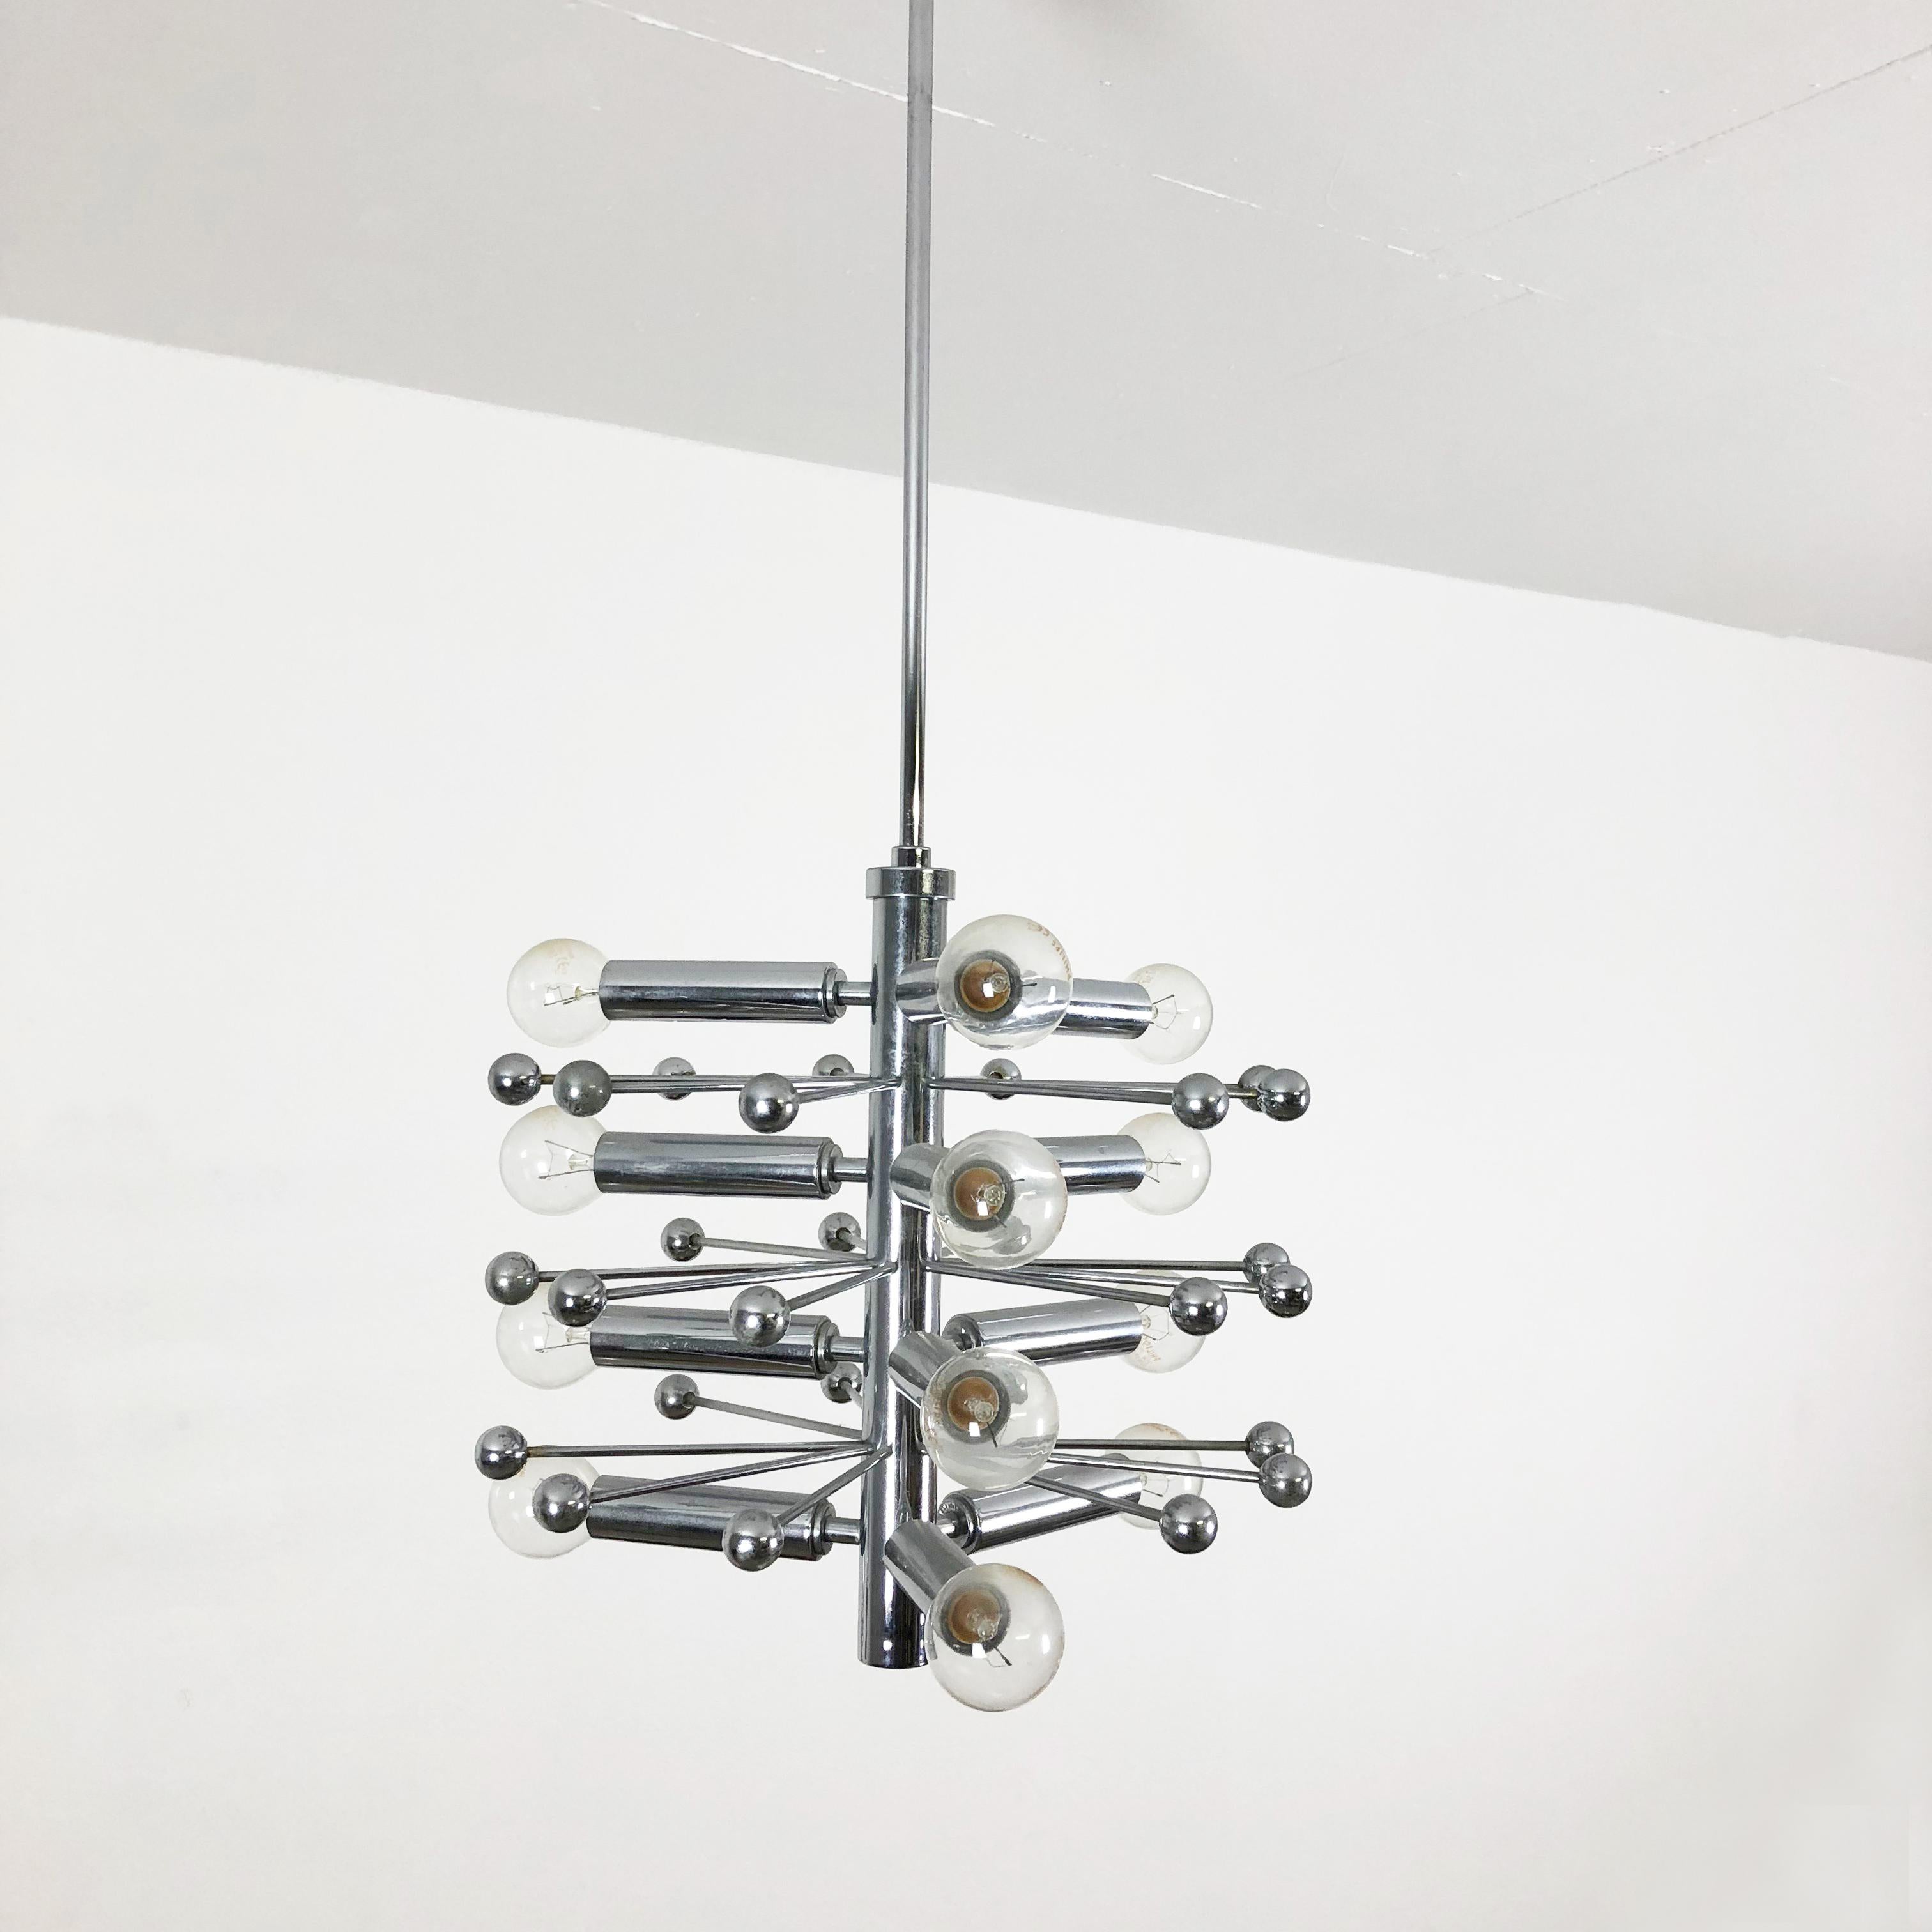 Modernist Chrome Sputnik Hanging Light, Cosack Lights, 1970s, Germany For Sale 1